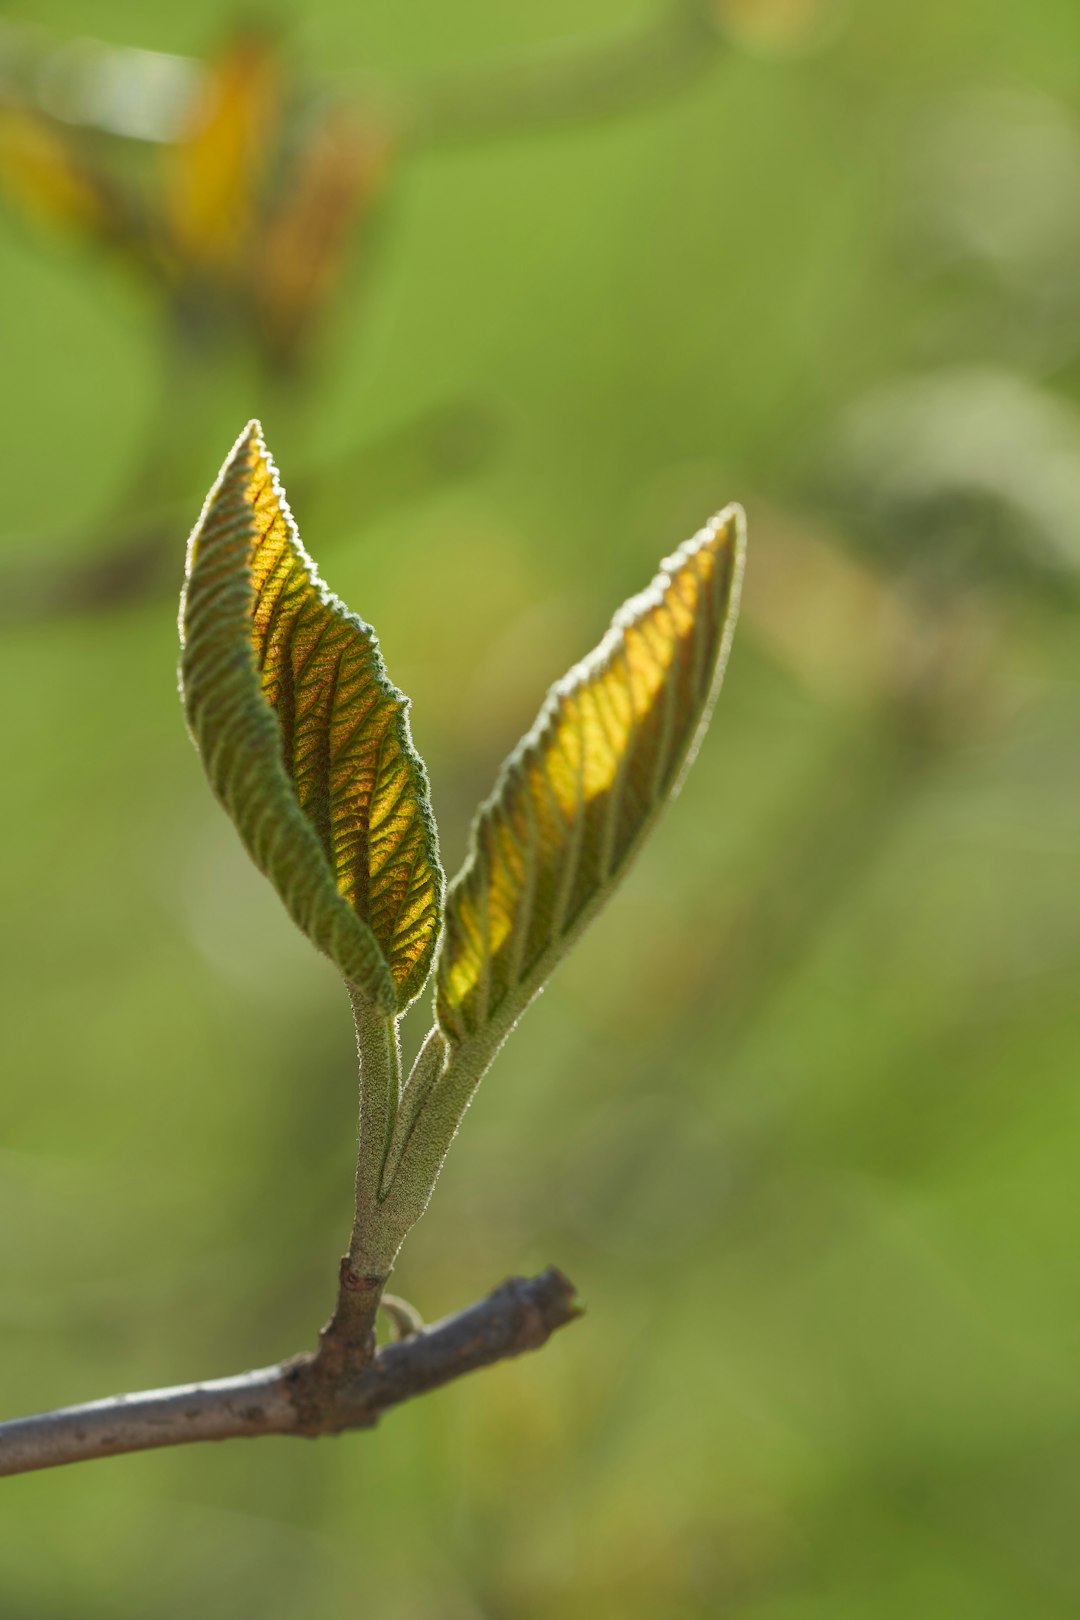 brown and green leaf in tilt shift lens